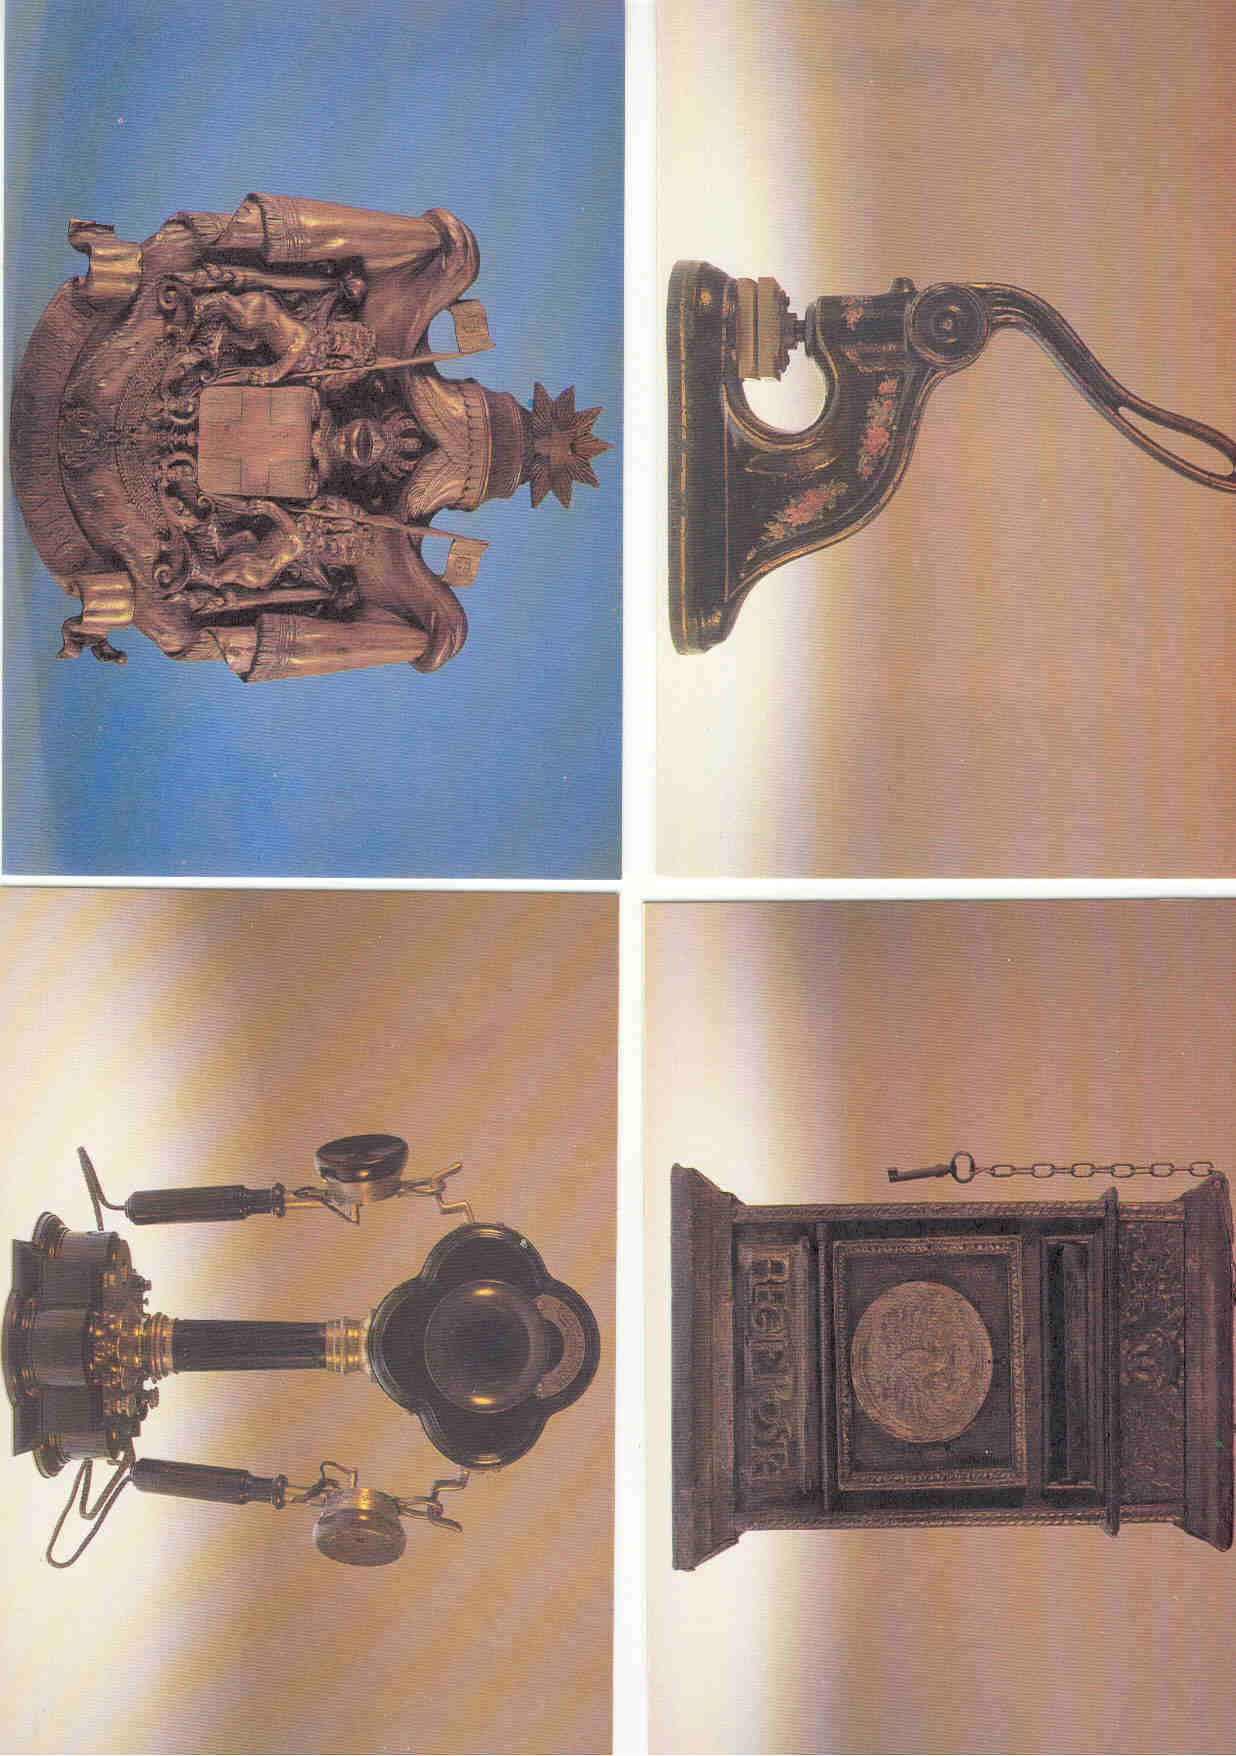 8791 - Italia - cartoline commemorative centenario ministero delle poste (con cofanetto contenitore)